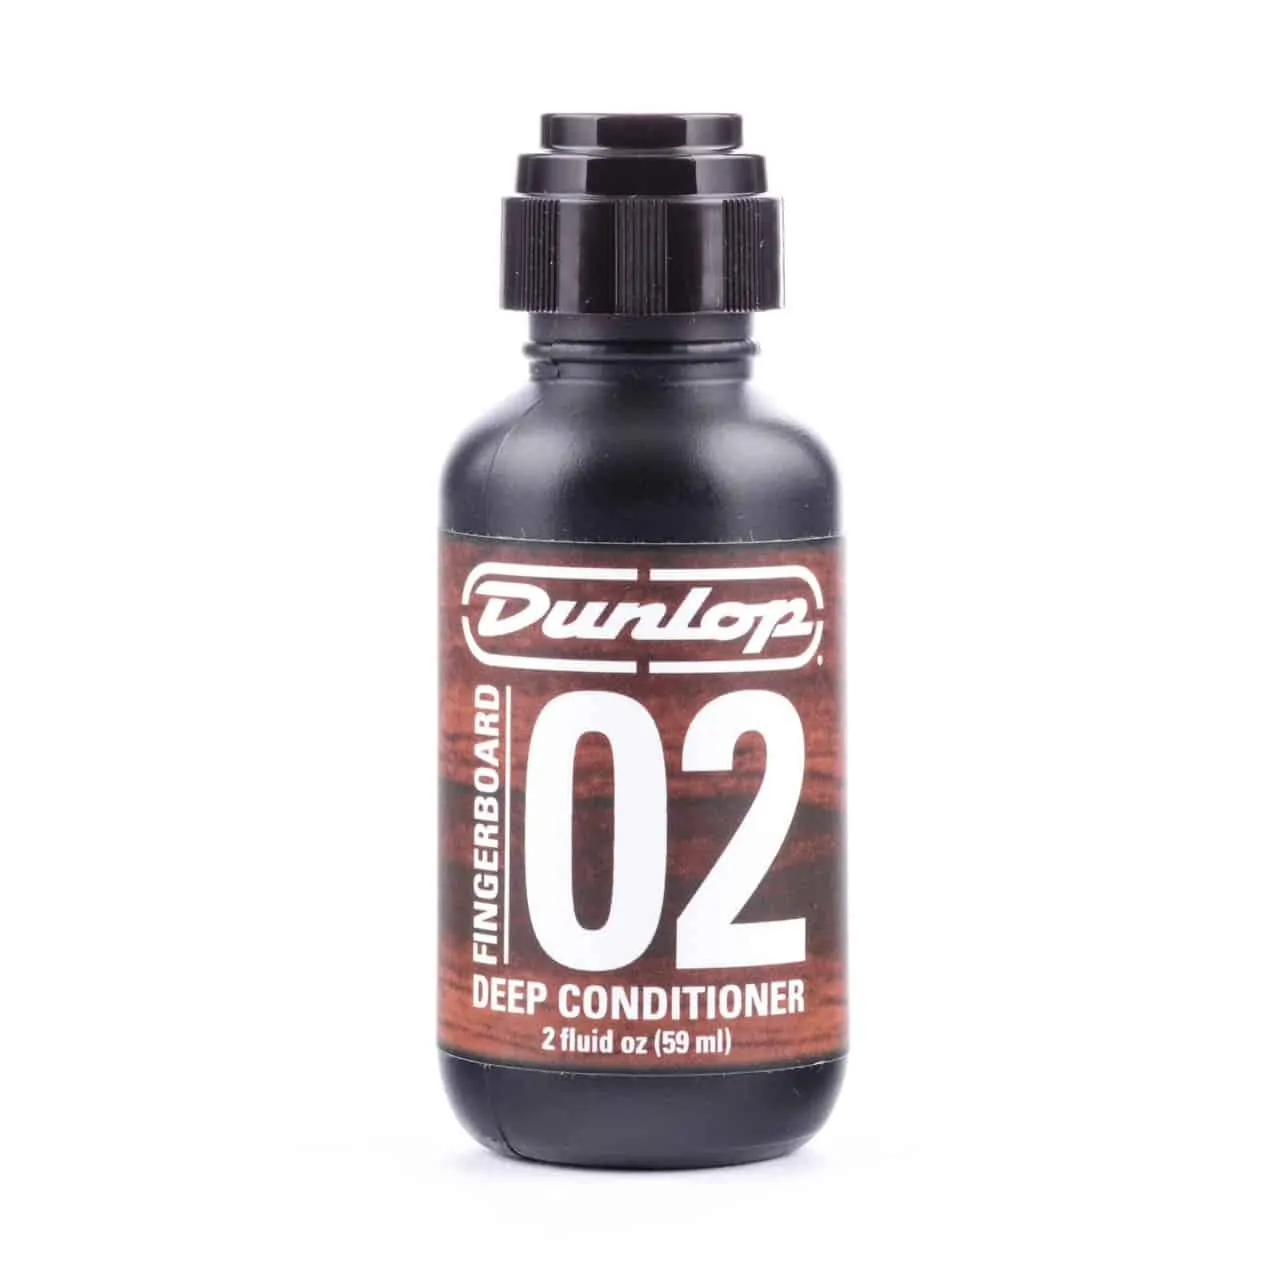 Dunlop Fingerboard 02 - Deep Conditioner